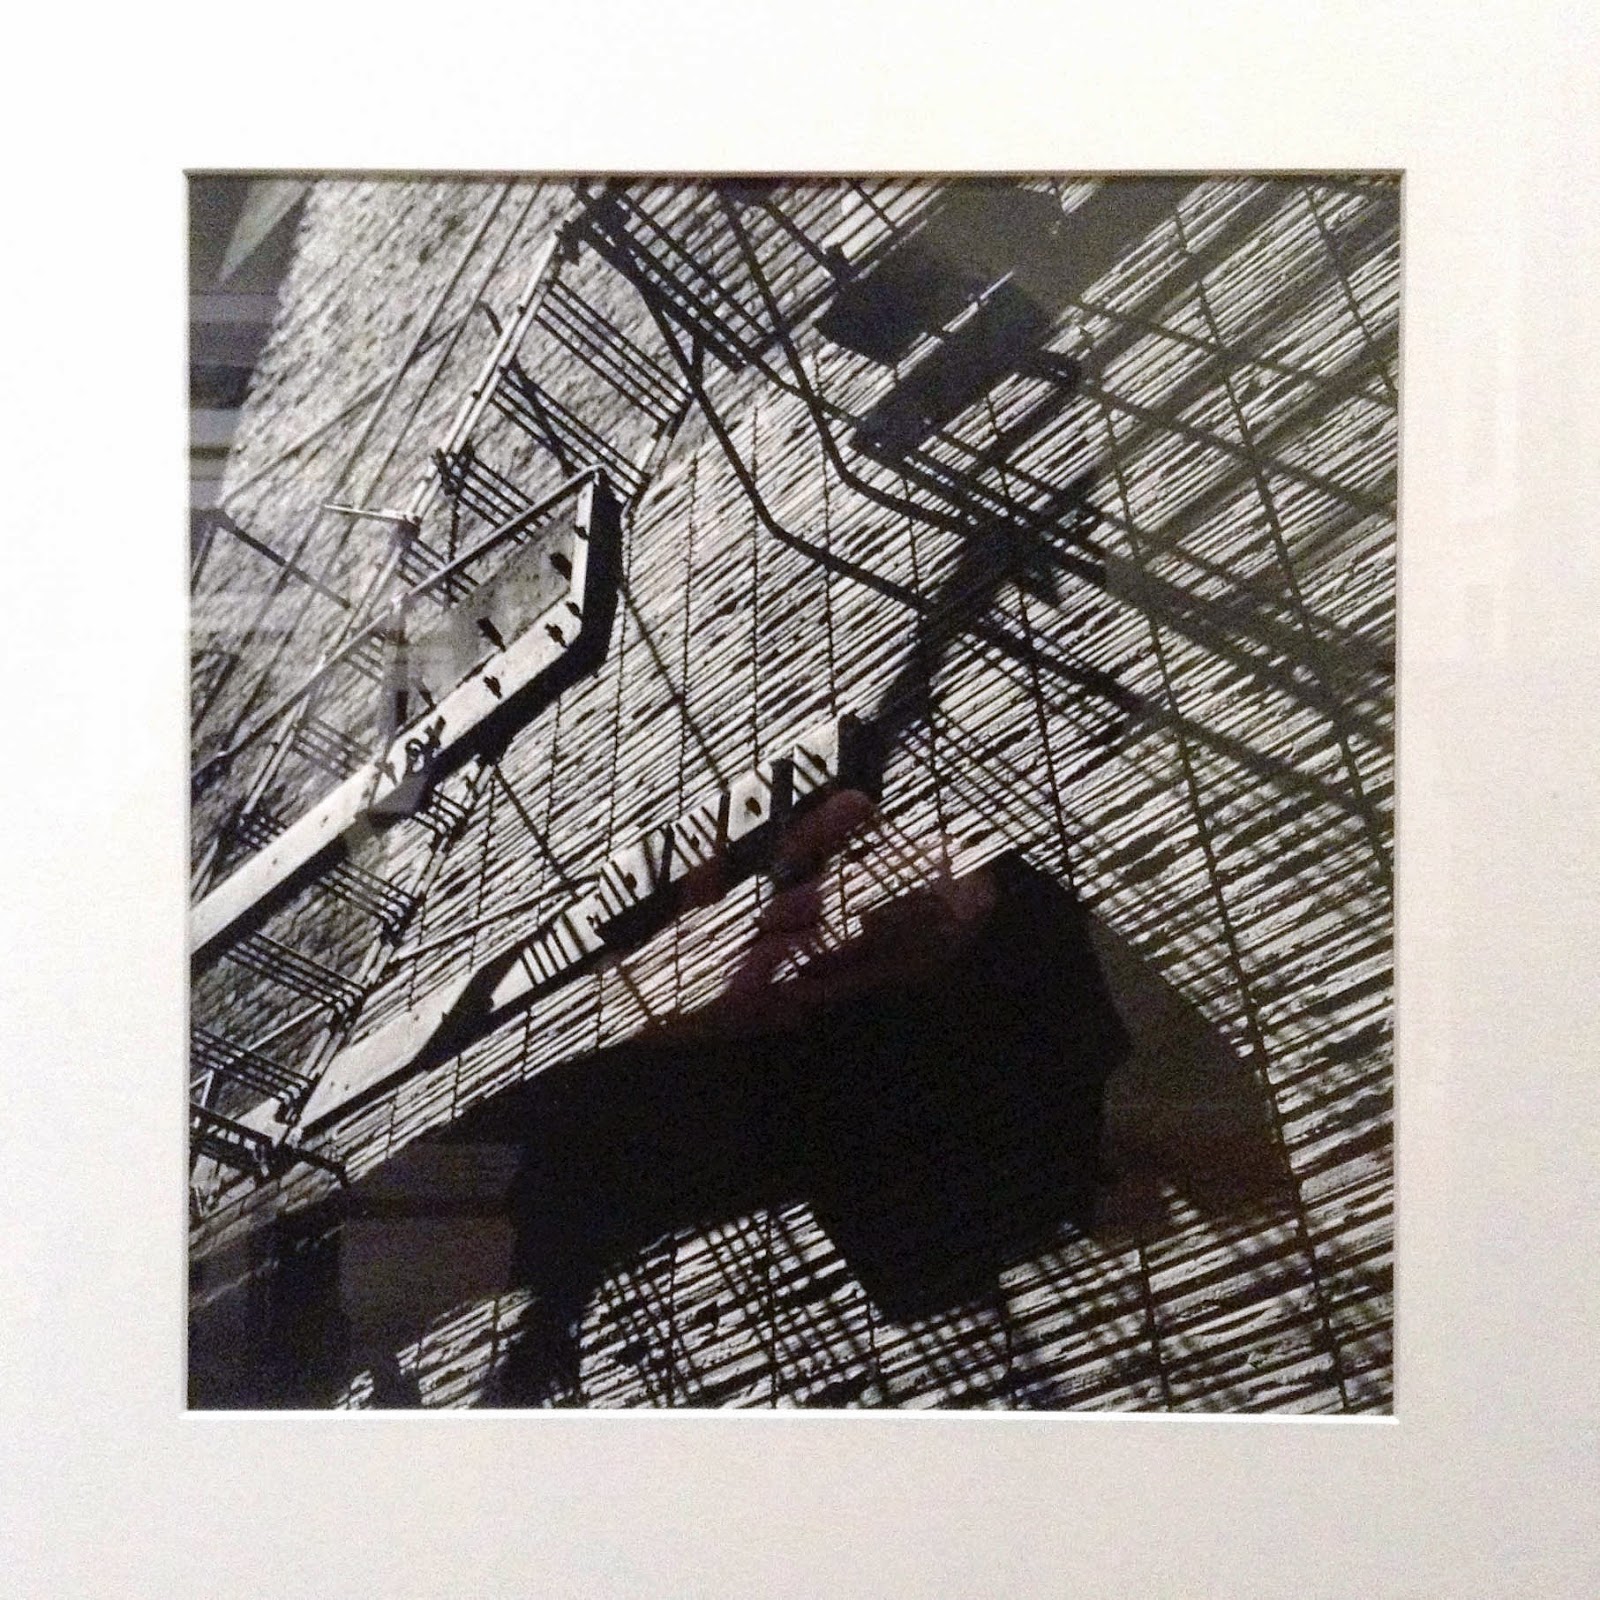 Vivian Maier: untitled, Chicago, IL, April 20, 1956